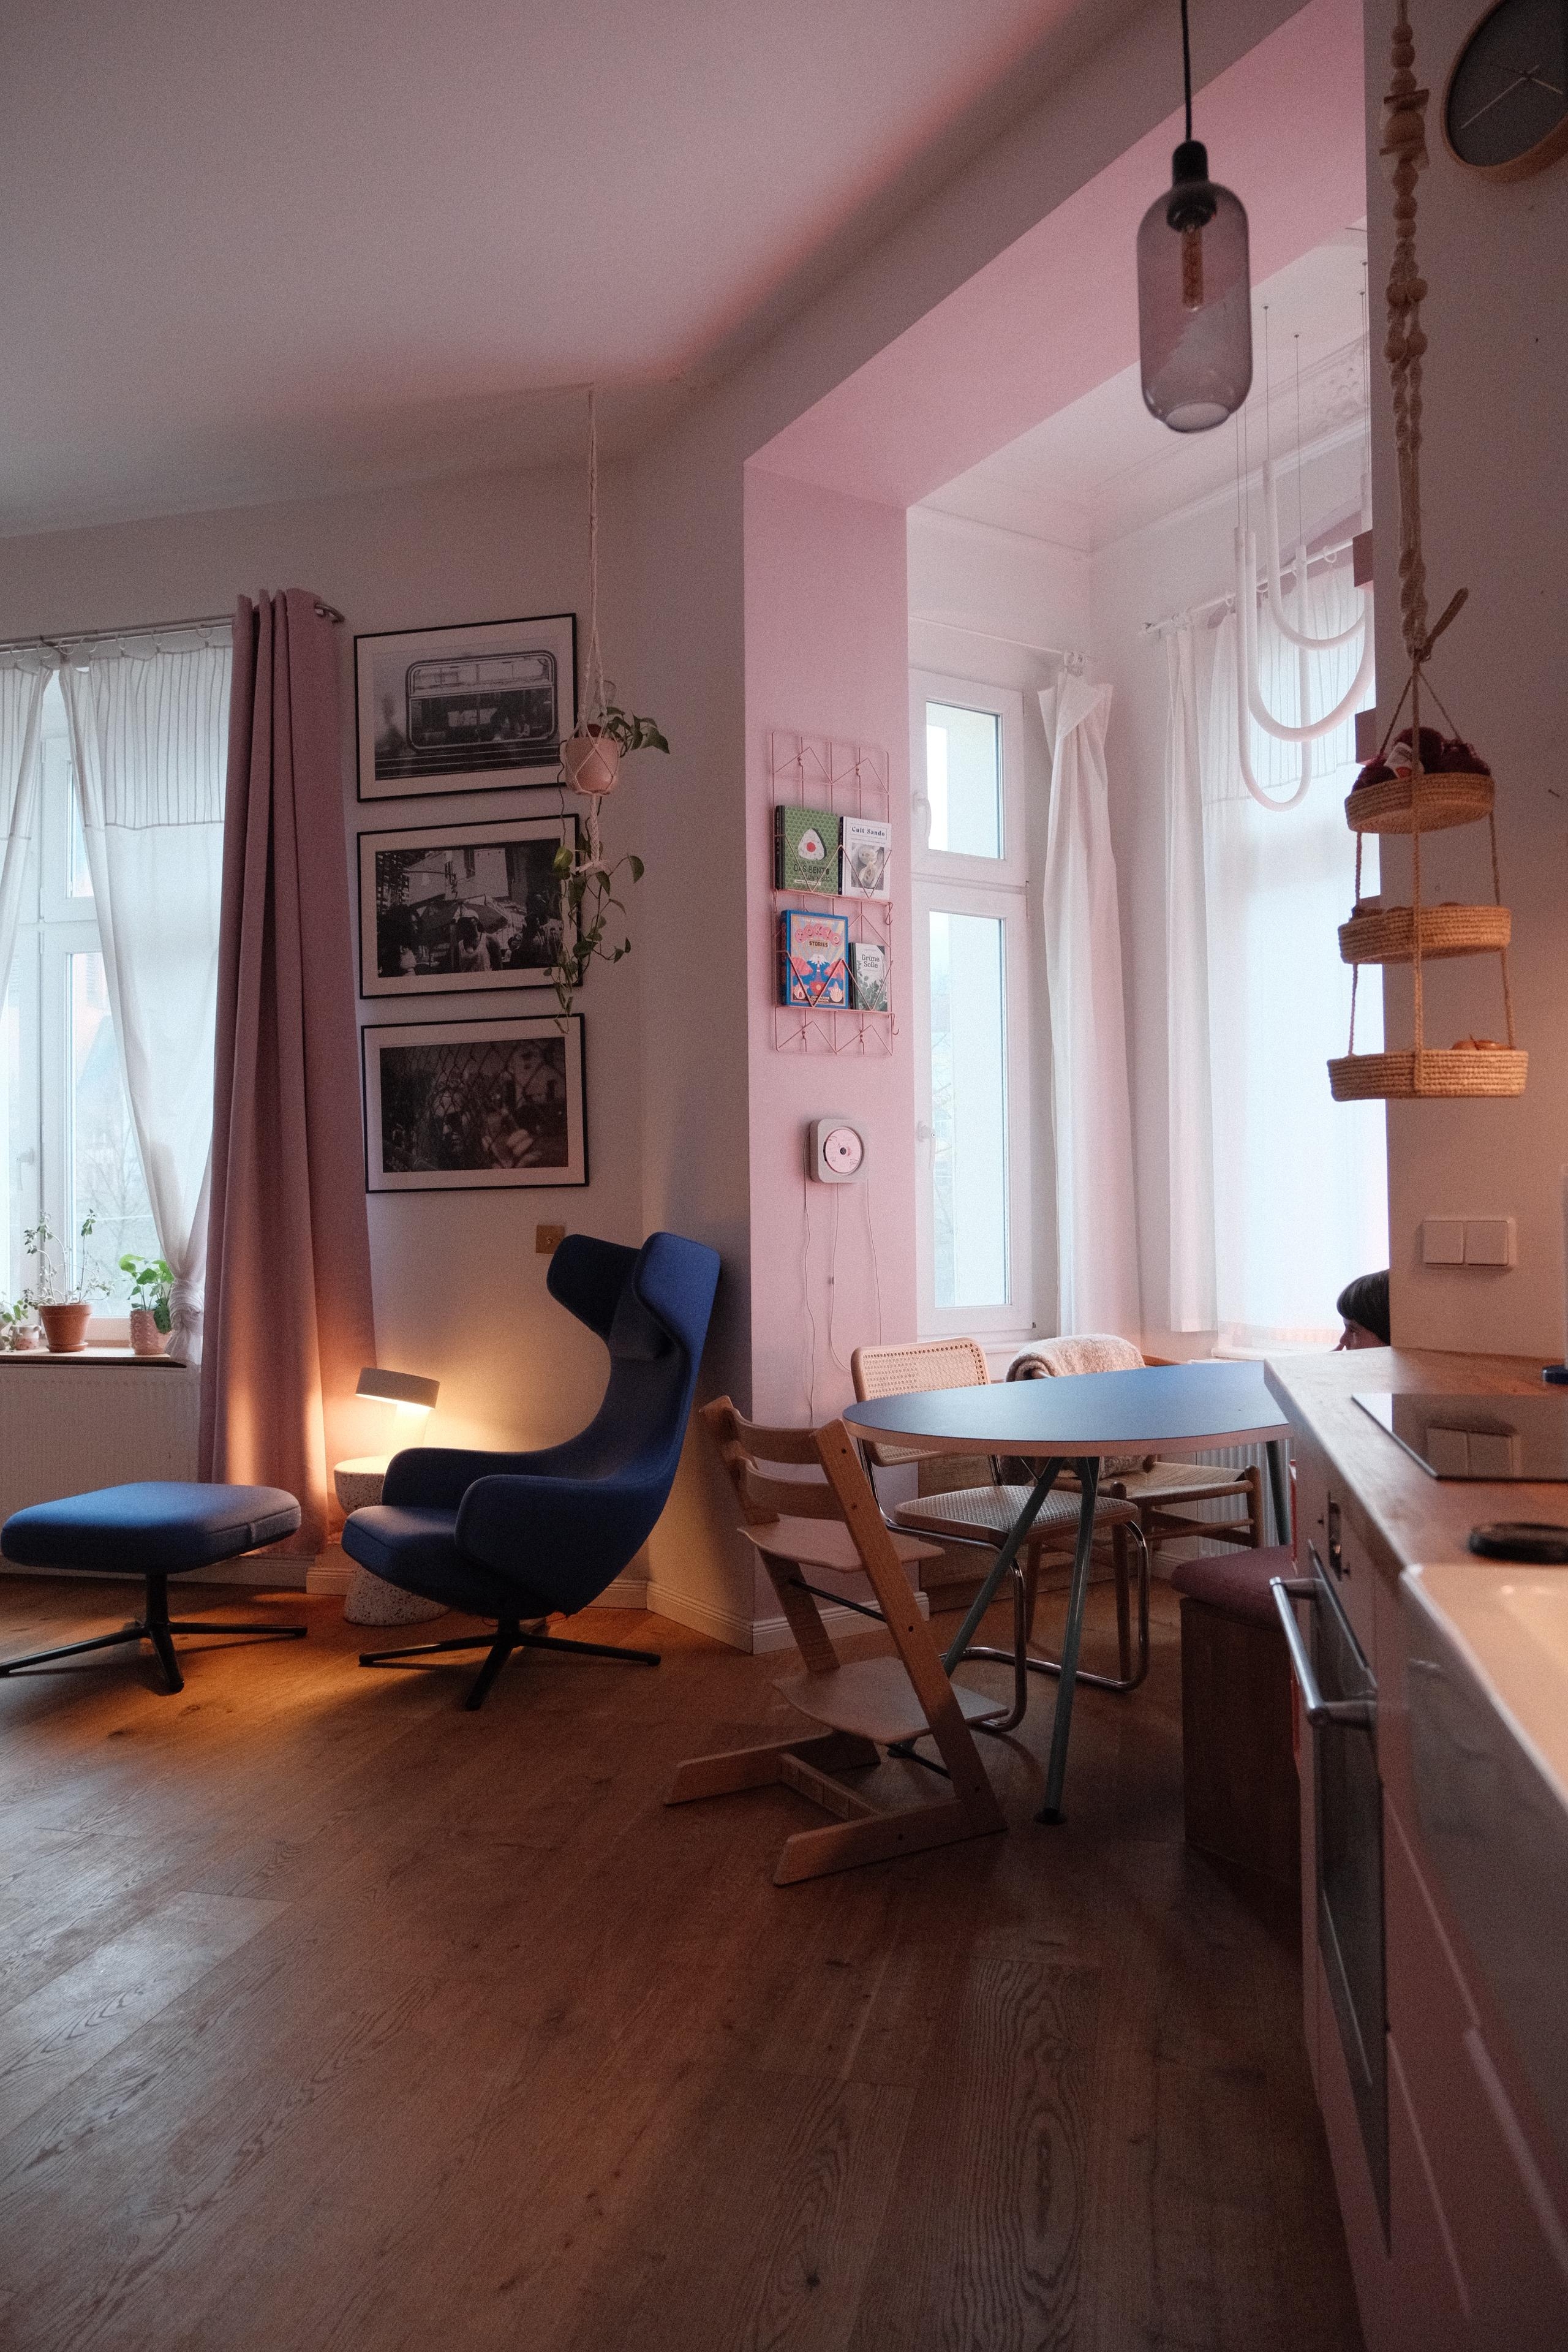 #wohnküche #altbauwohnung #couchliebt #gemütlich #farbenfroh #sessel #esstisch #essecke #essbereich #rosa #erker